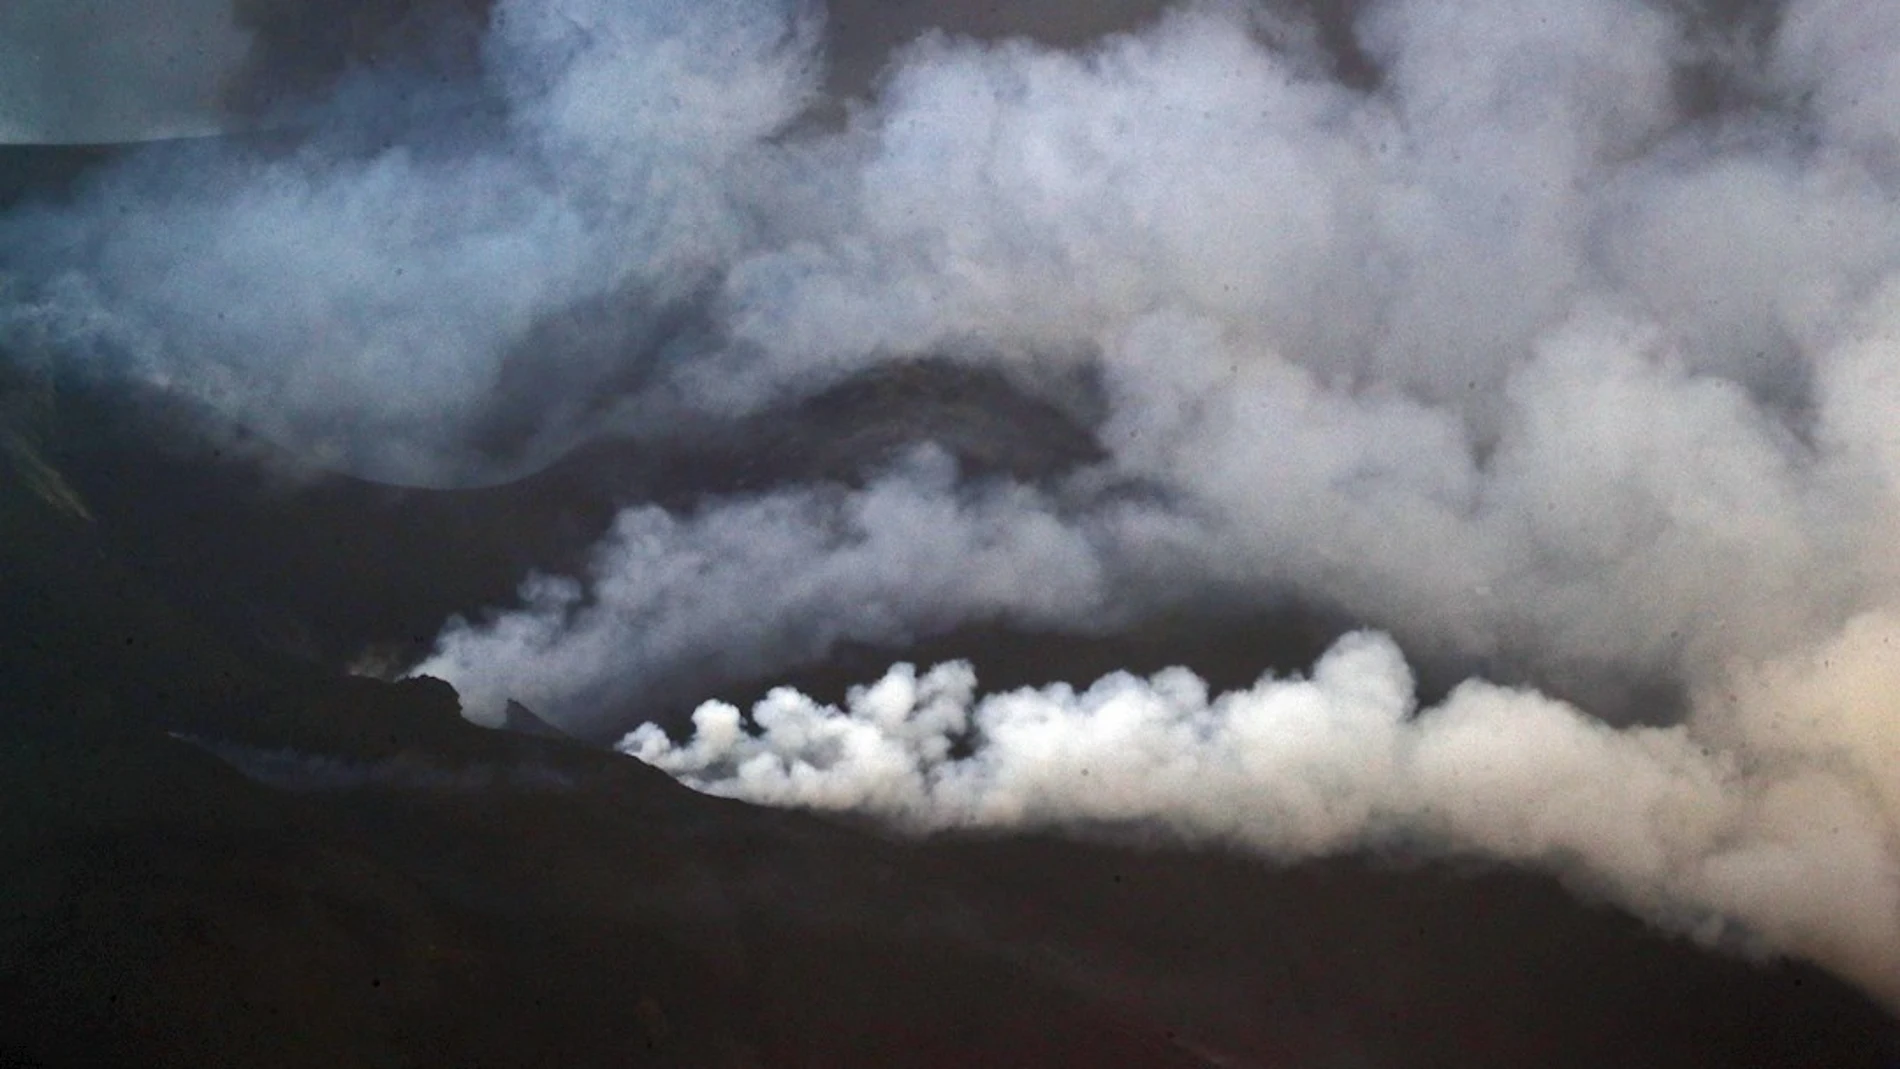 El volcán de Cumbre Vieja, en La Palma, continúa su actividad eruptiva cuando se cumple el día 46 desde que entró en erupción en septiembre